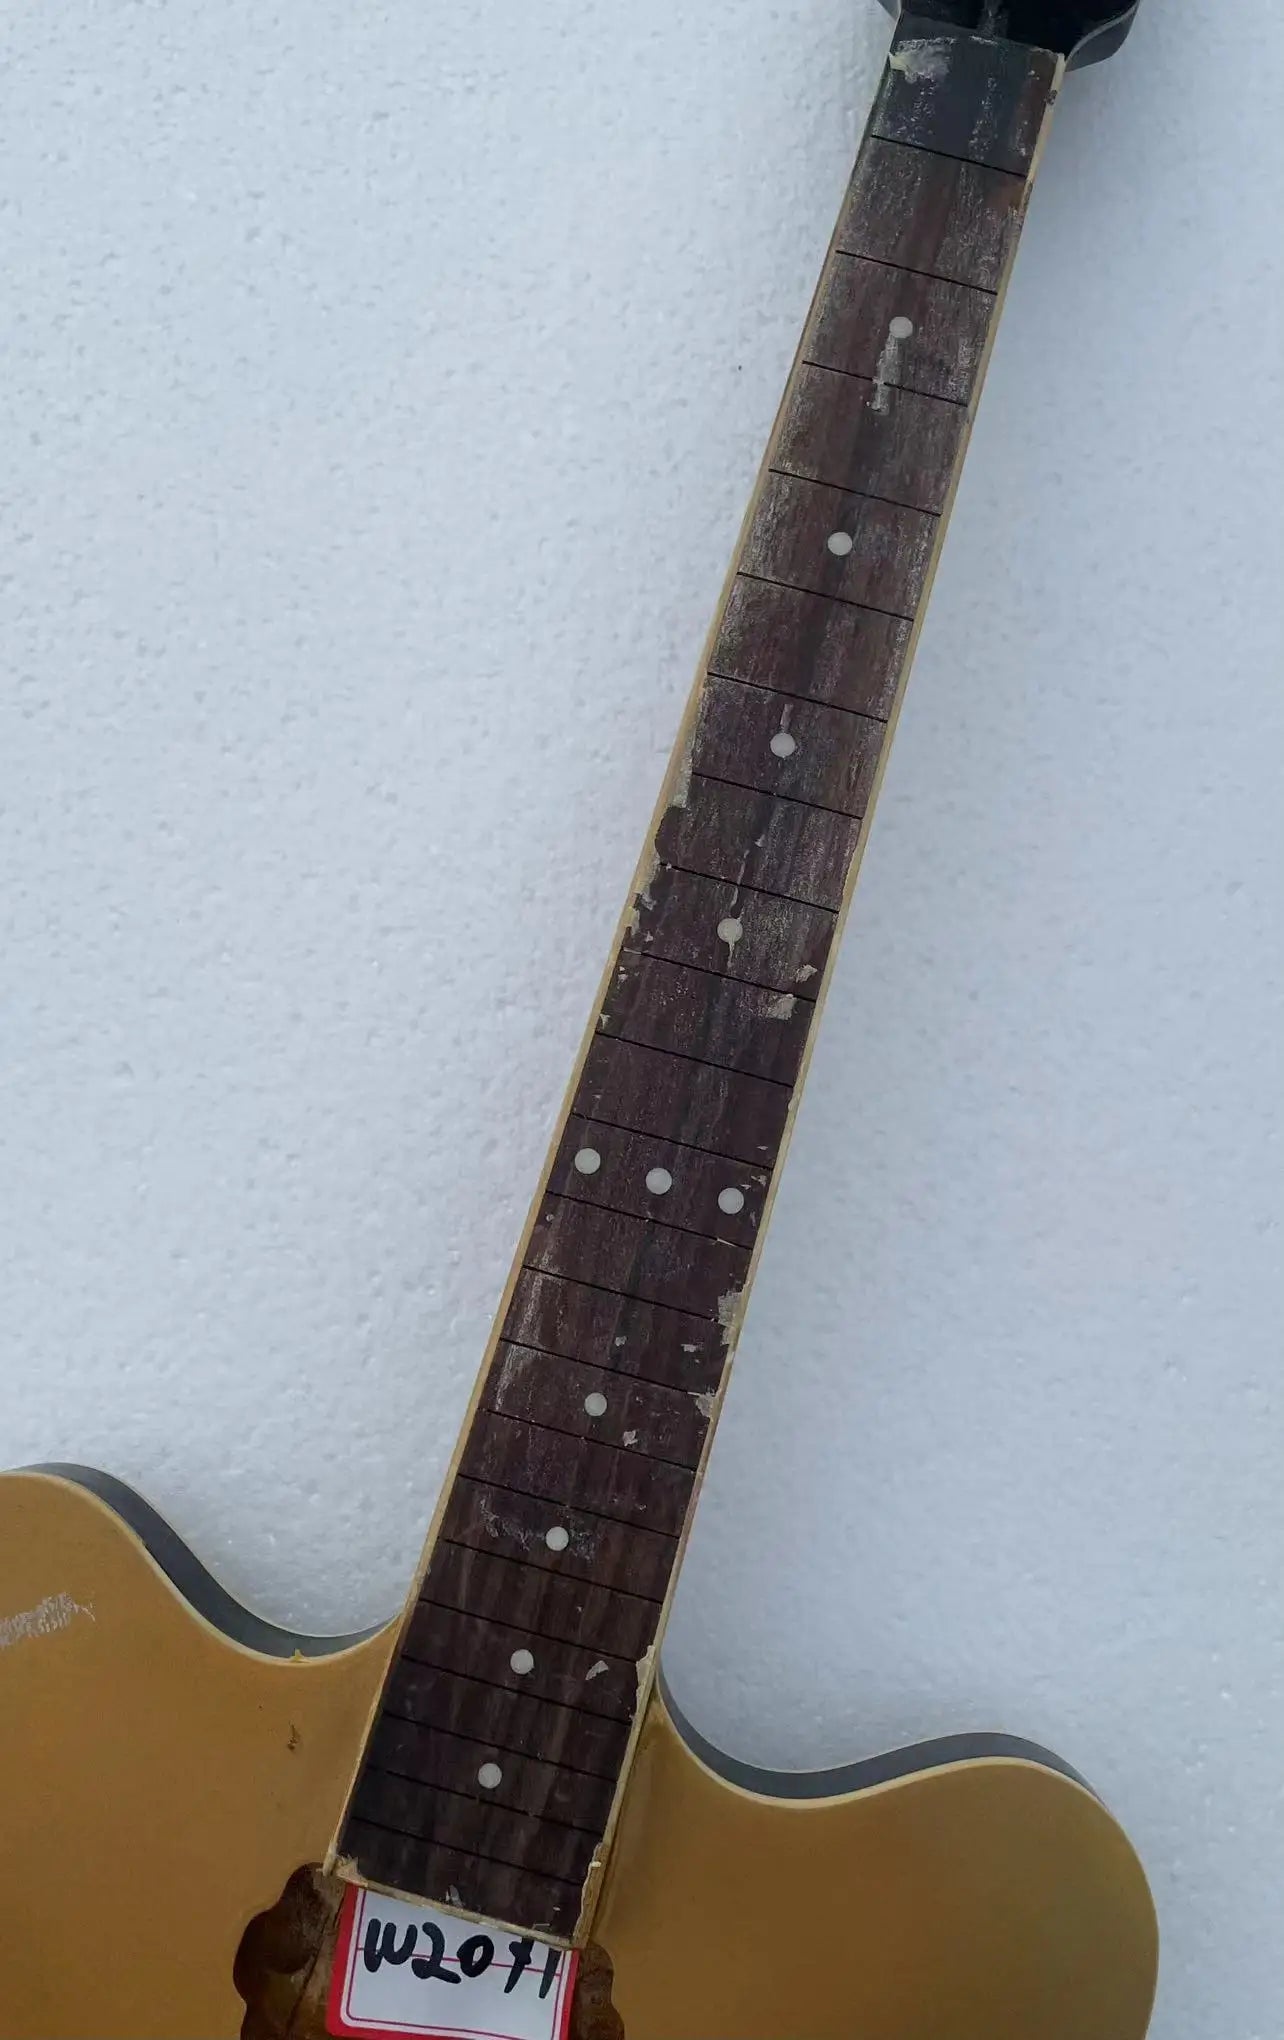 Gold Semi Hollow Jazz Guitar Laminated Maple Body with Mahogany Neck 